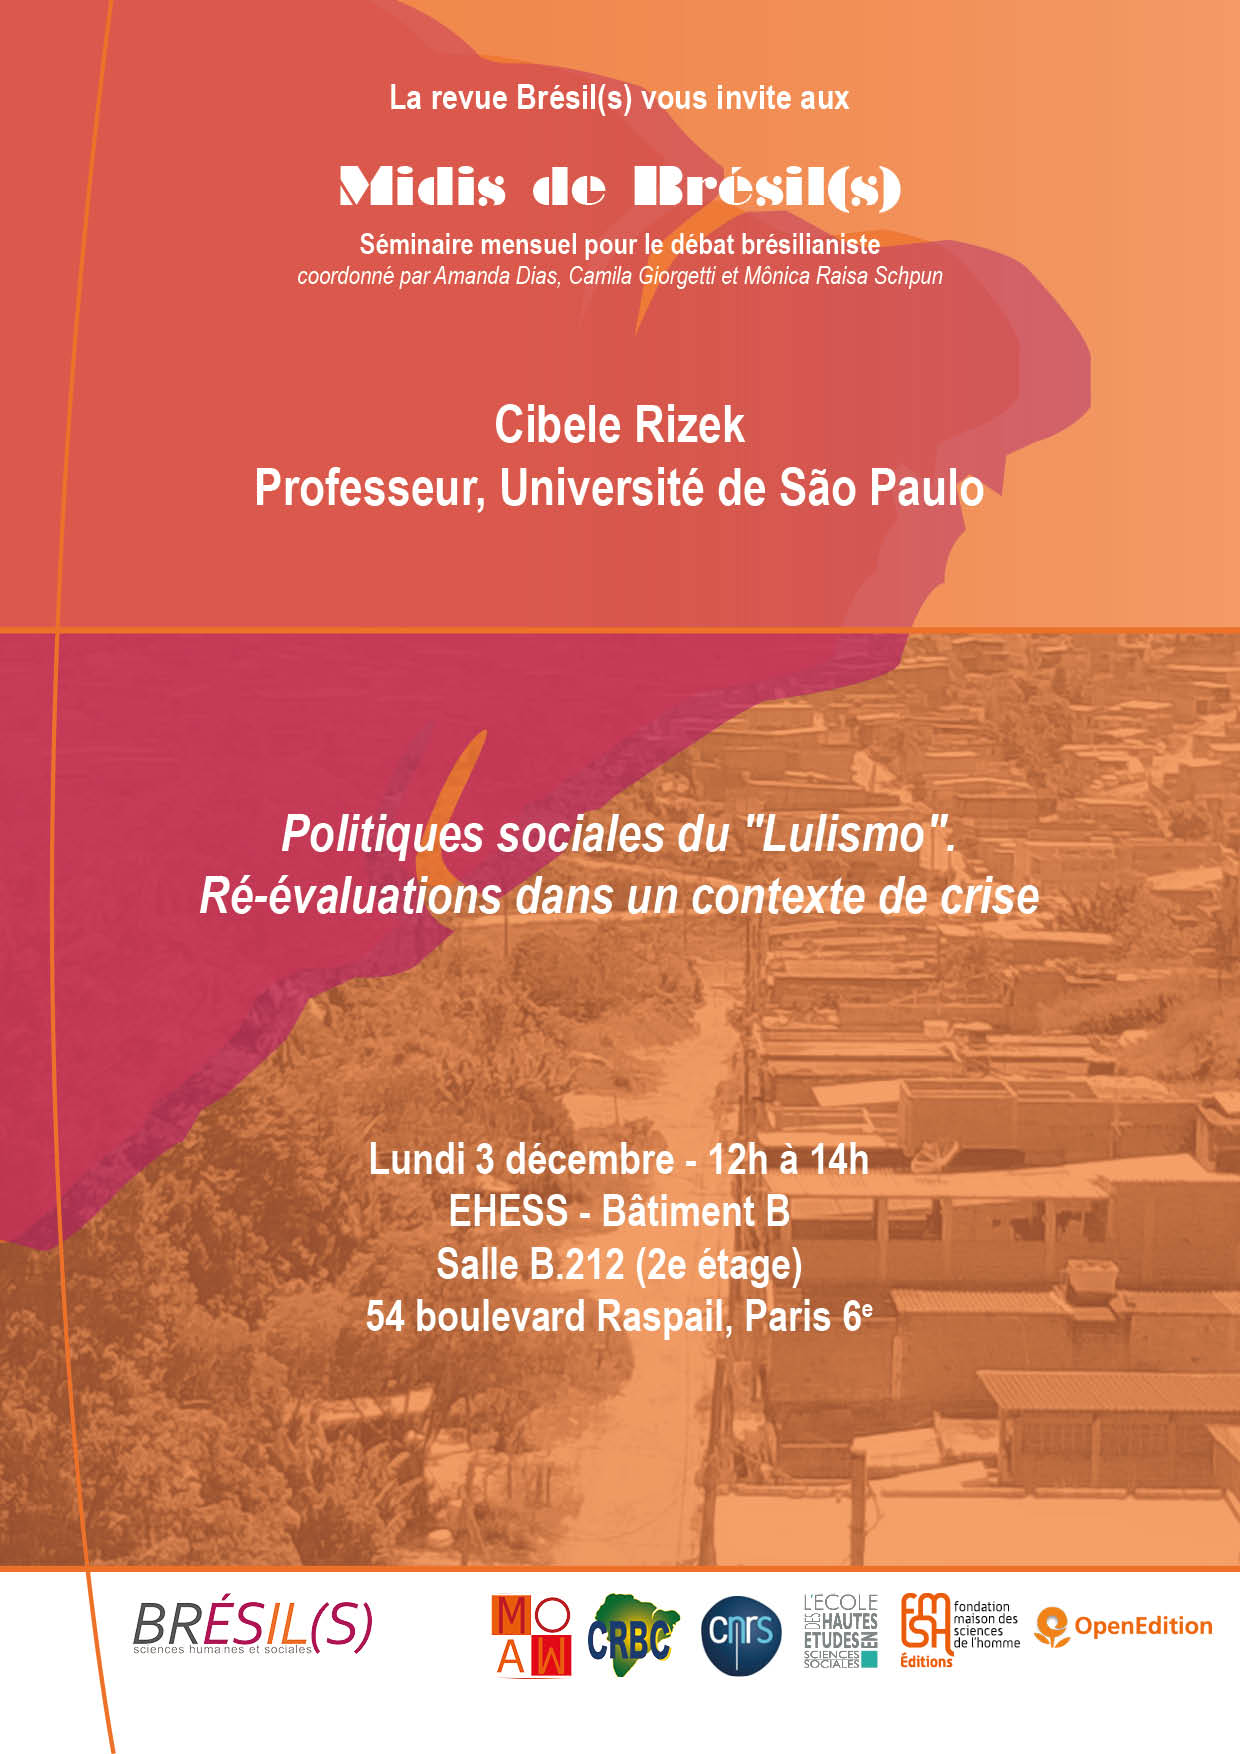 Les Midis de Brésil(s) - Cibele Rizek, professeur, Université de São Paulo, « Politiques sociales du 